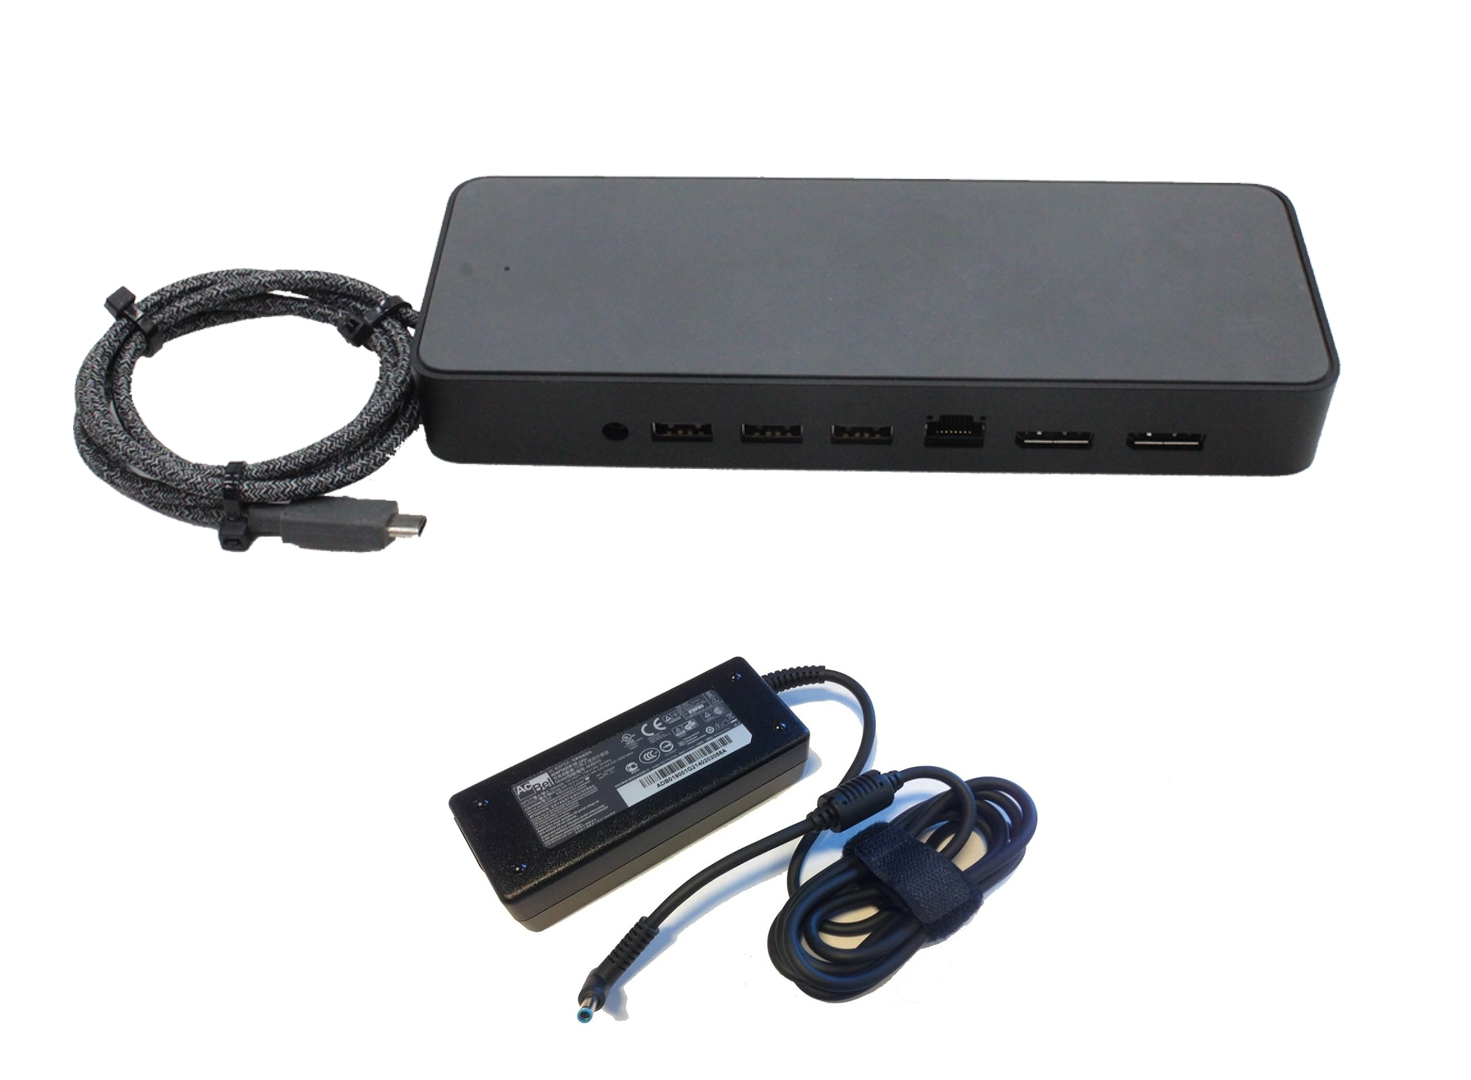 داک استيشن USB-C HP خروجي ده پورت مدل HSA-B005DSHPUSB-C Universal Dock HSA-B005DSداراي خروجي هاي Audio/USB A/USB C/Dosplay/Lan 90W